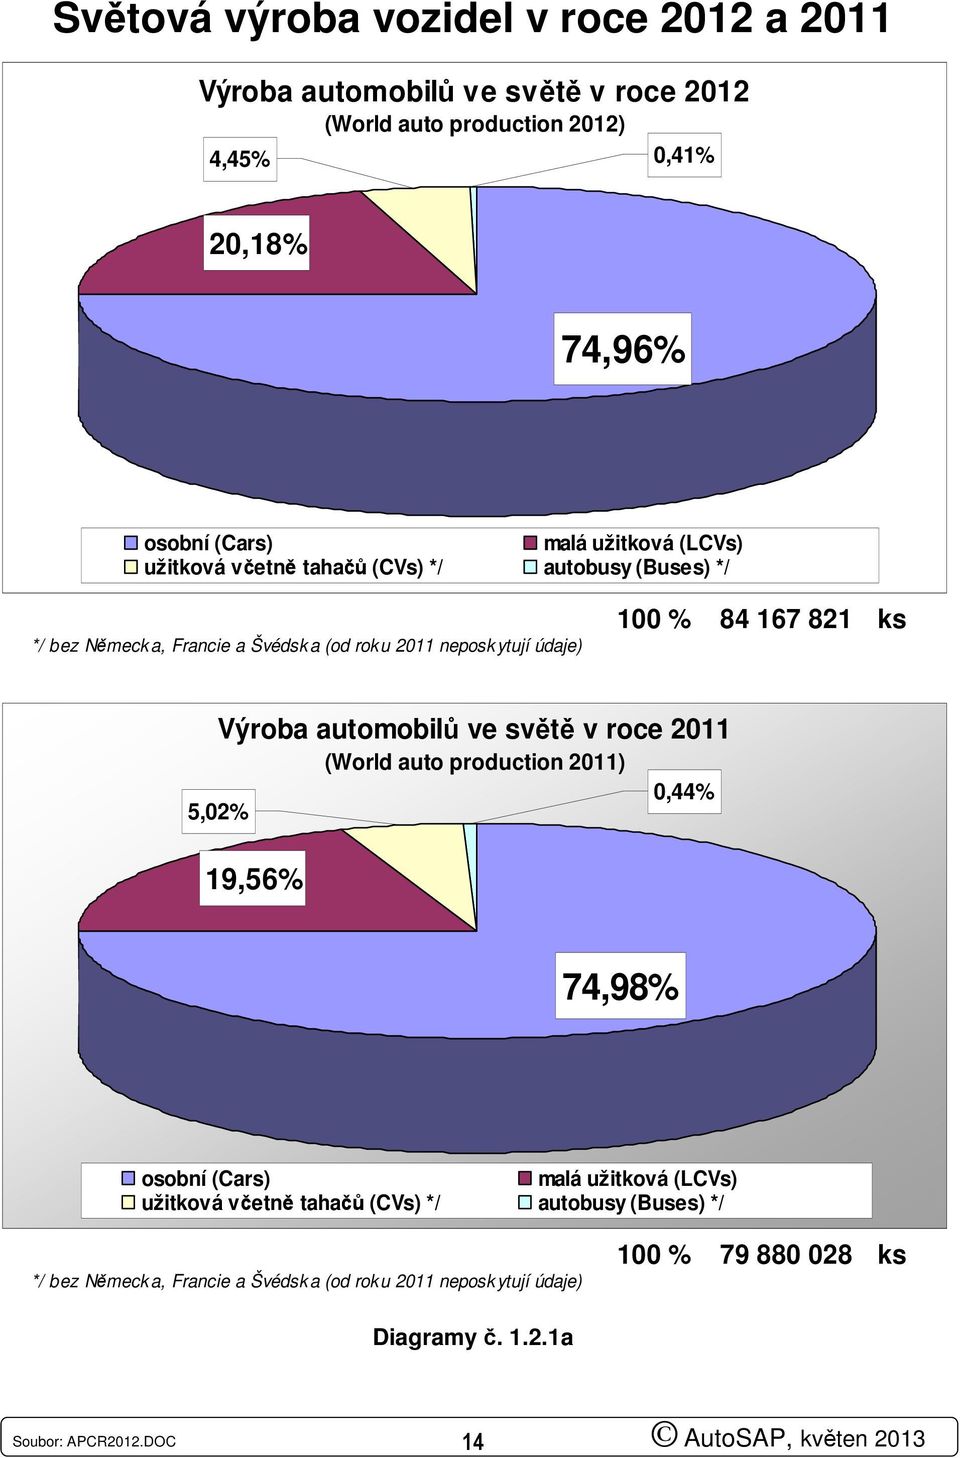 Výroba automobilů ve světě v roce 2011 (World auto production 2011) 5,02% 19,56% 0,44% 74,98% osobní (Cars) malá užitková (LCVs) užitková včetně tahačů (CVs) */